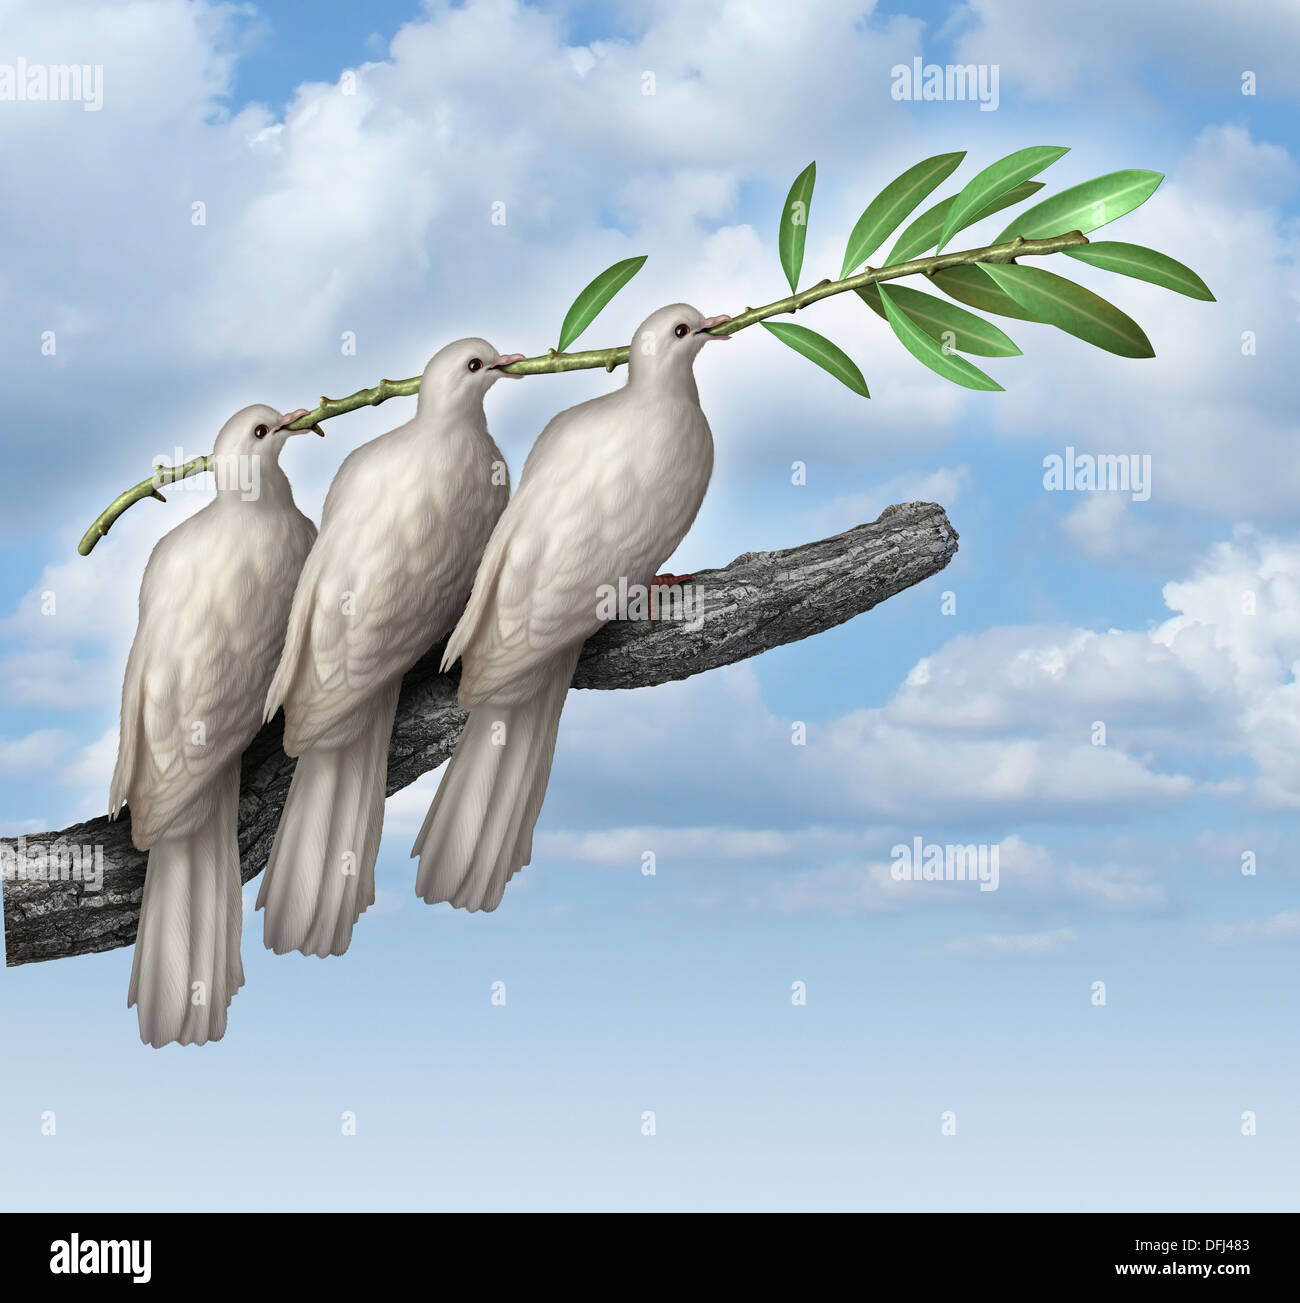 Gruppe-Diplomatie als ein Konzept der ausgehandelten Frieden mit drei weißen Tauben gemeinsam in Partnerschaft und Freundschaft hält einen Olivenzweig als Symbol der Brüderlichkeit und der Hoffnung für die Zukunft der Menschheit auf dem Weg der Menschenrechte und Freiheit. Stockfoto